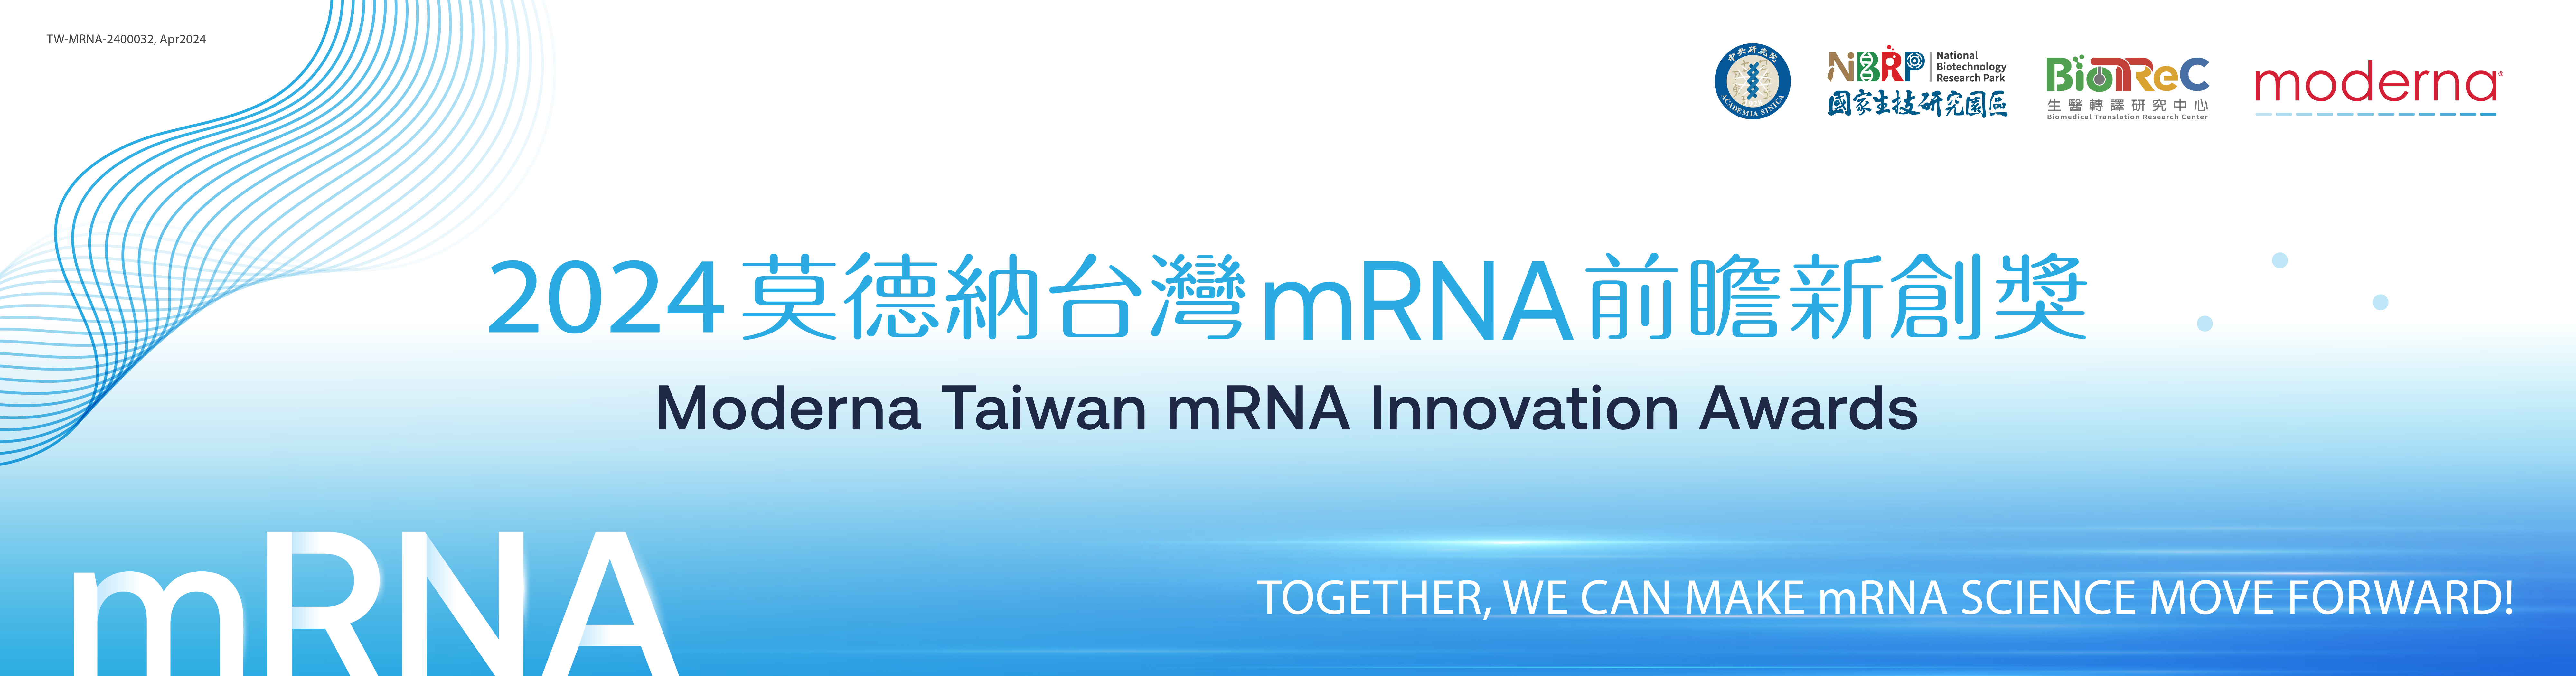 「莫德納台灣mRNA前瞻新創獎」即日起至113年6月15日受理報名，敬邀全國生醫研究先進們踴躍參與。